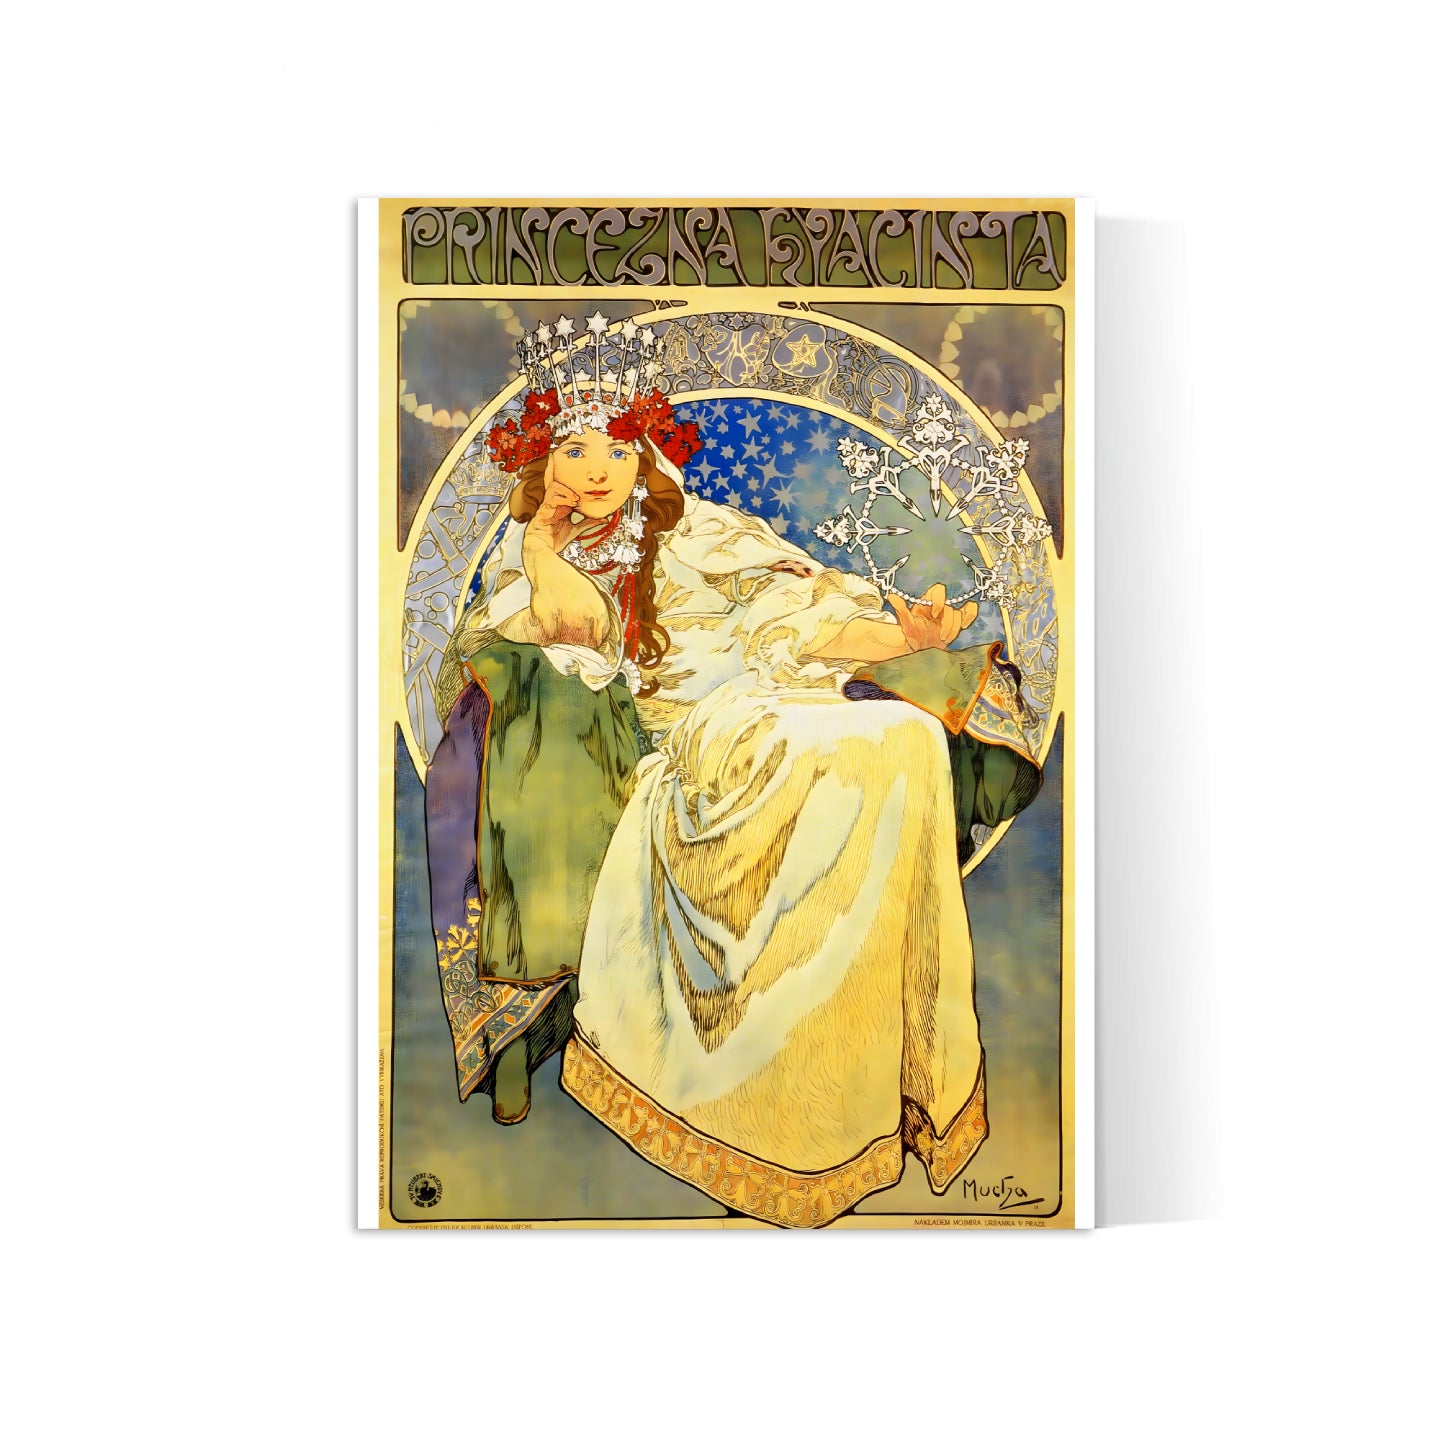 Affiche Alphonse Mucha "Princesse Hyacinthe" - Art Nouveau - Haute Définition - papier mat 230gr/m2